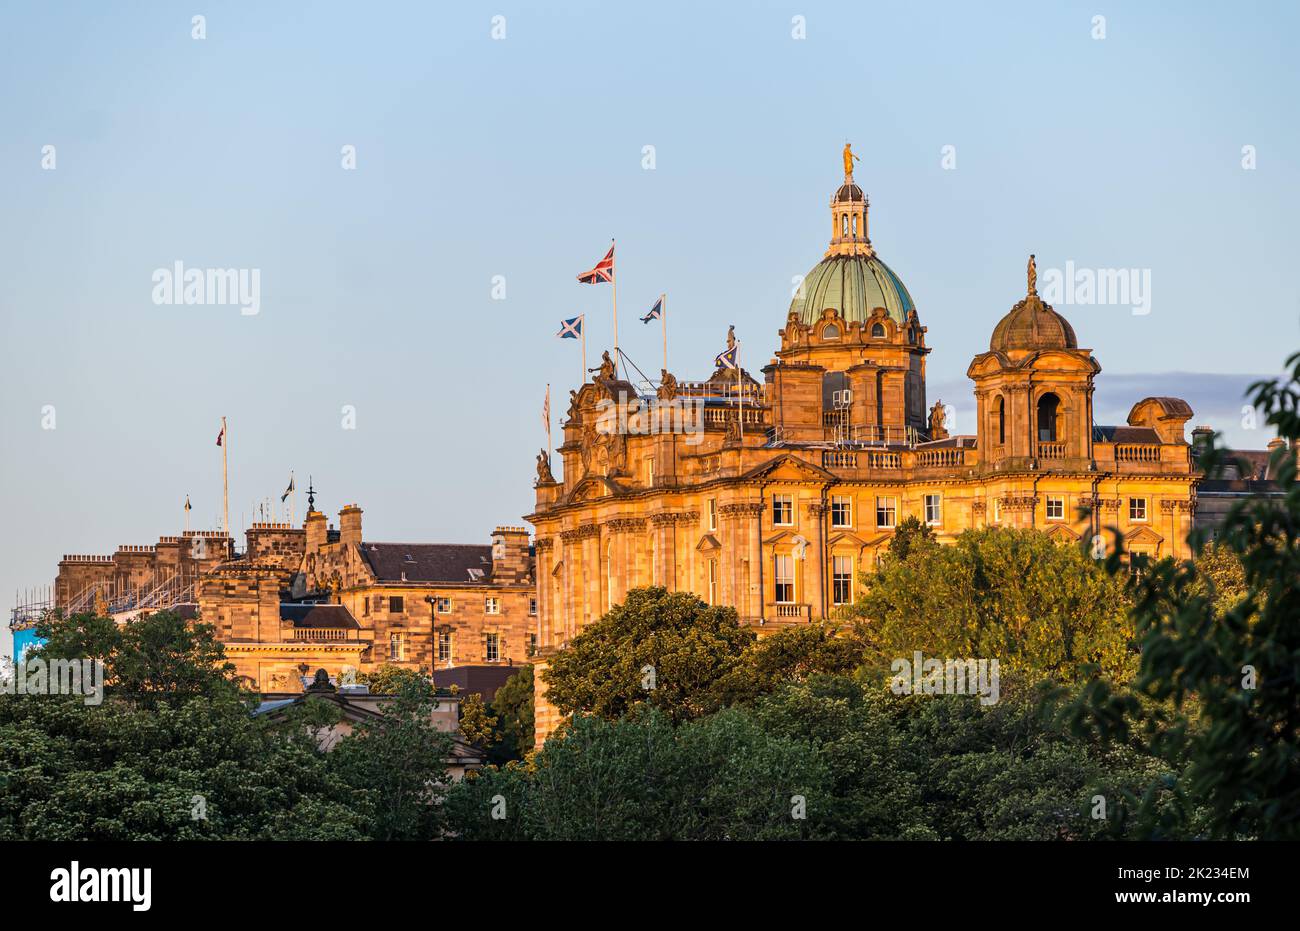 Großes Gebäude mit Kupferkuppel, ehemaliges Hauptquartier der Bank of Scotland mit Saltire und Union Jack-Nationalflaggen, Edinburgh, Schottland, Großbritannien Stockfoto